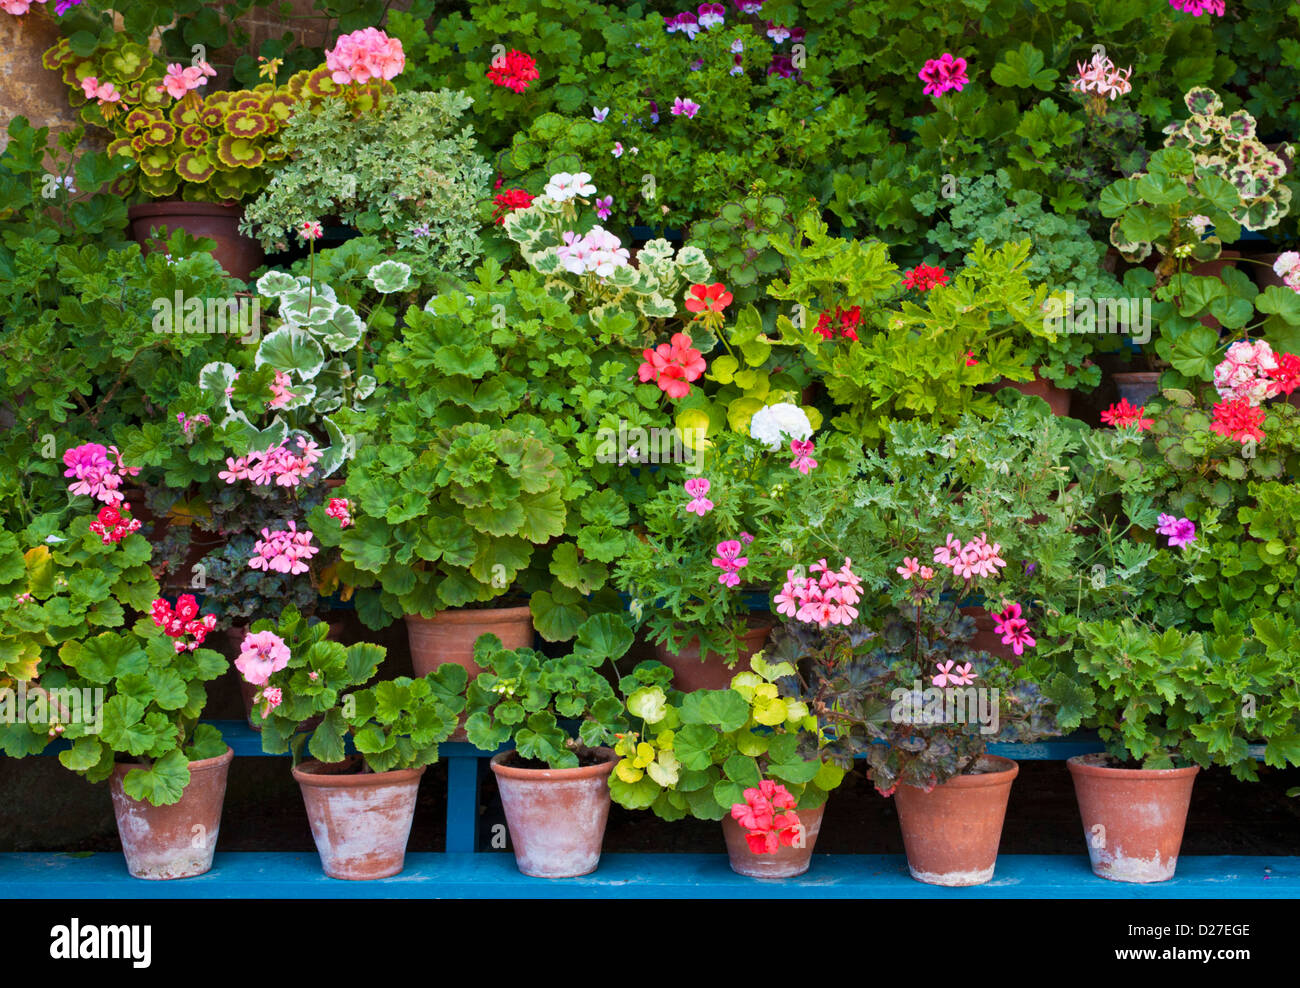 Sammlung von Geranien in Terrakotta Blumentöpfe in einer erhöhten Darstellung, England, GB, UK, EU, Europa Stockfoto